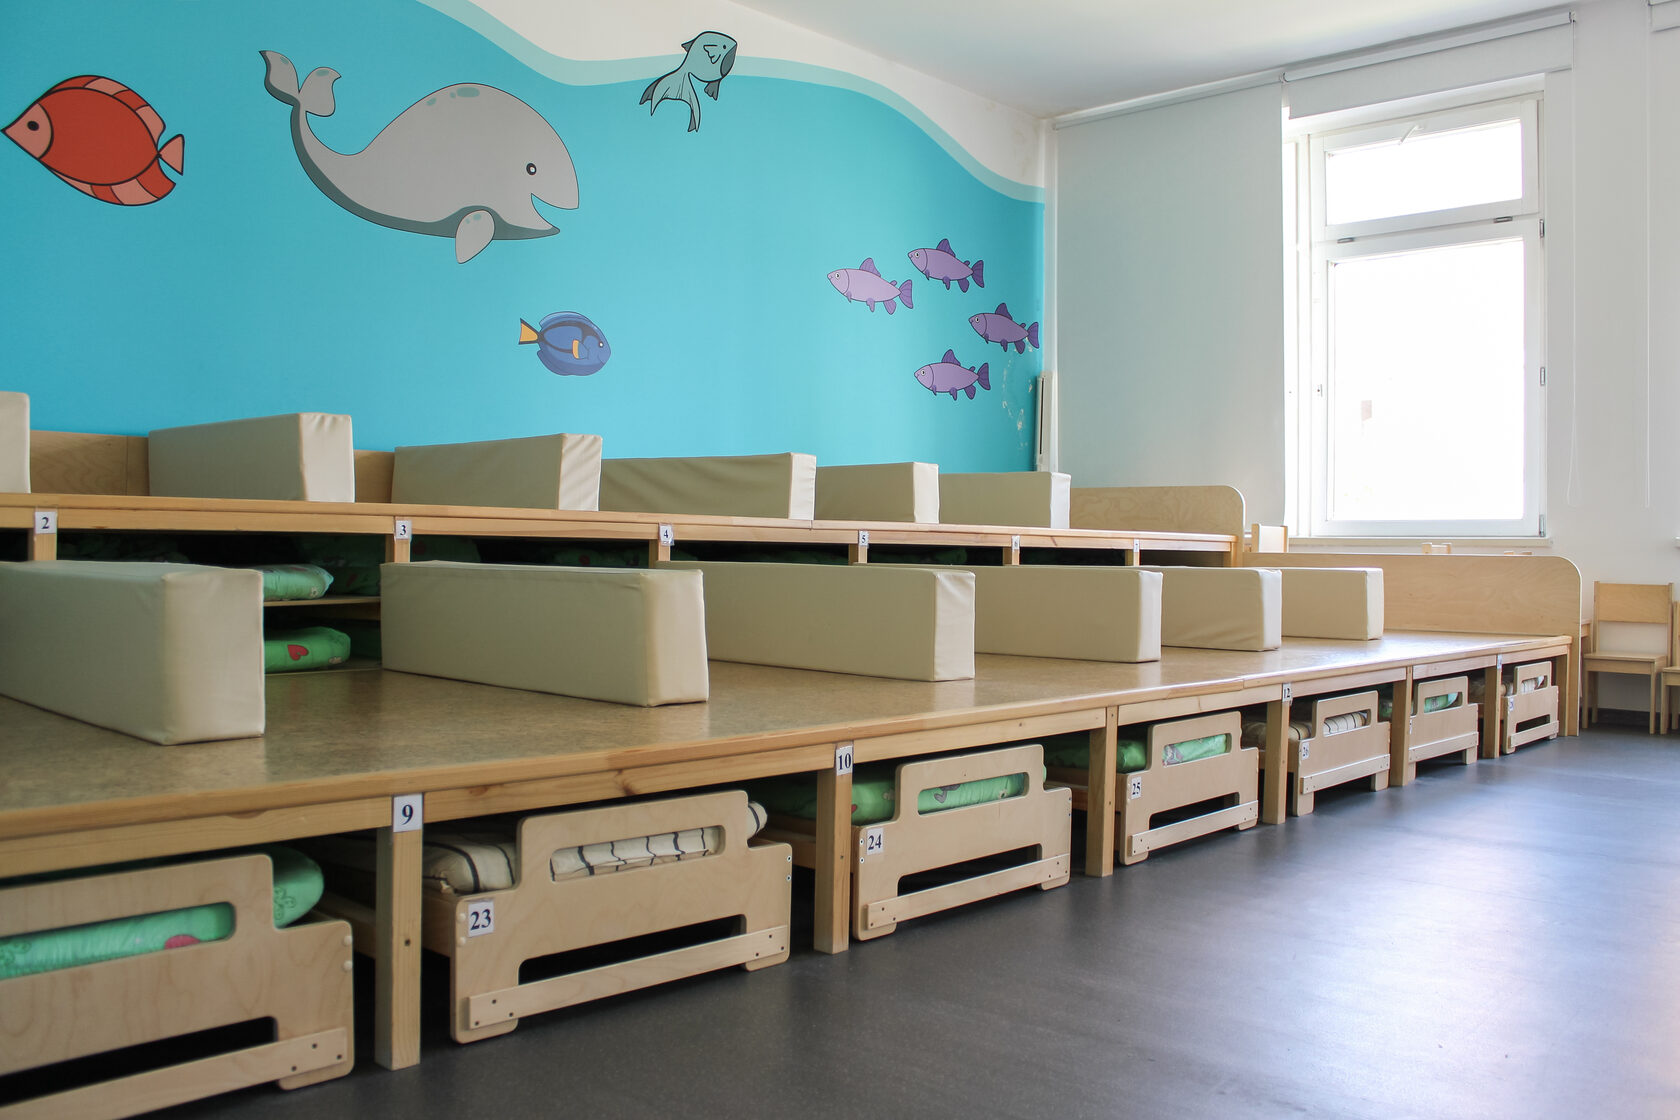 трансформируемая детская мебель для игровых зон детского сада